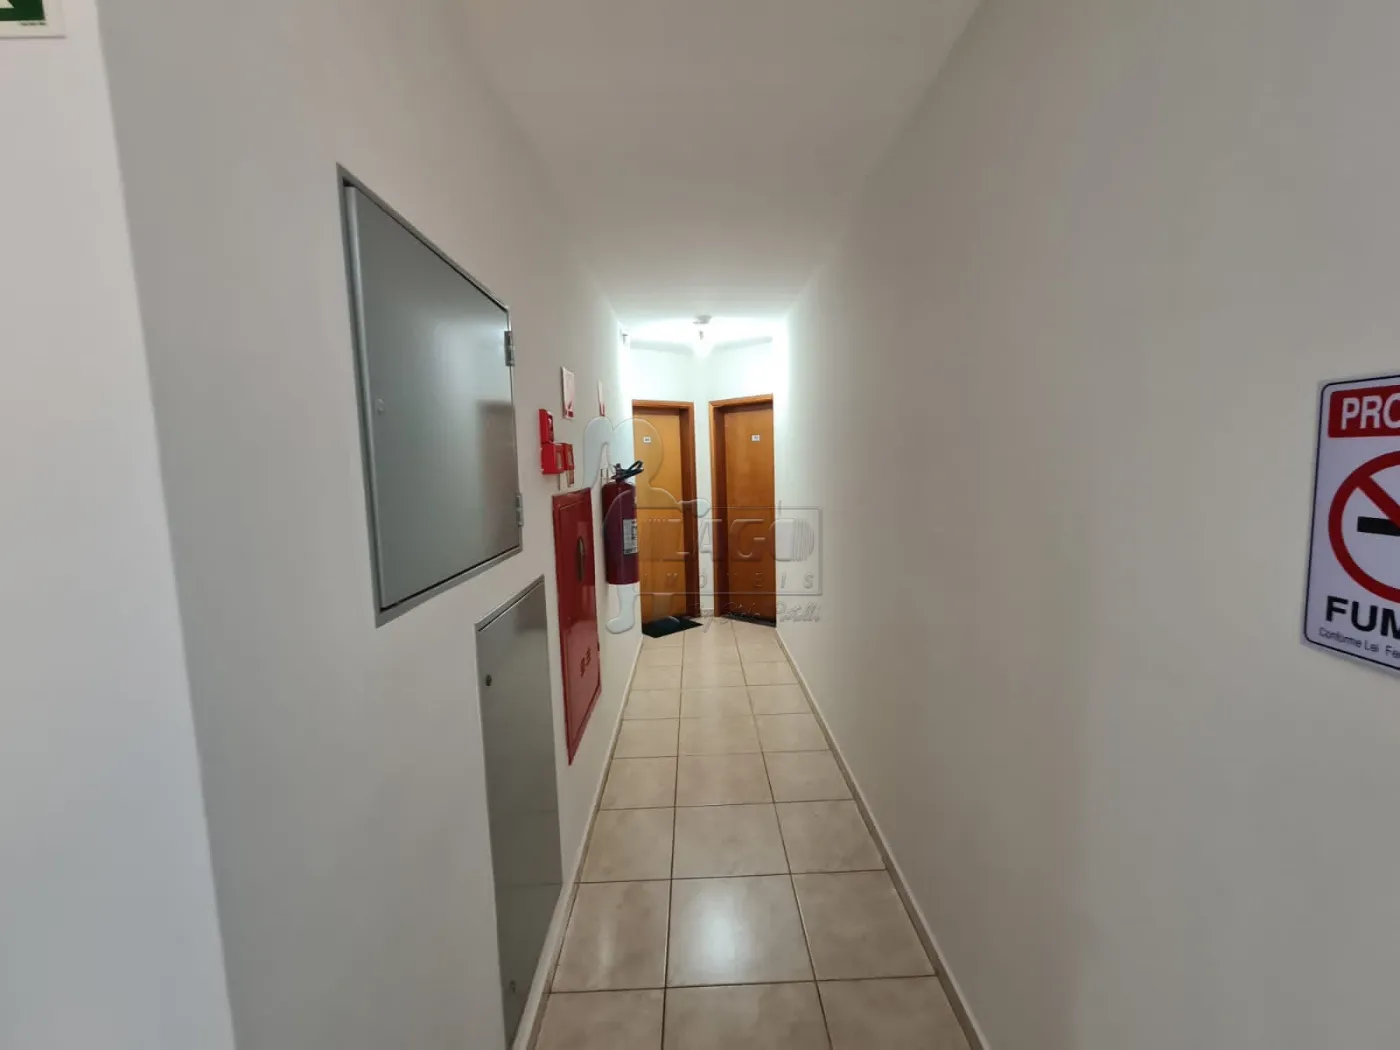 Alugar Apartamento / Padrão em Ribeirão Preto R$ 950,00 - Foto 16